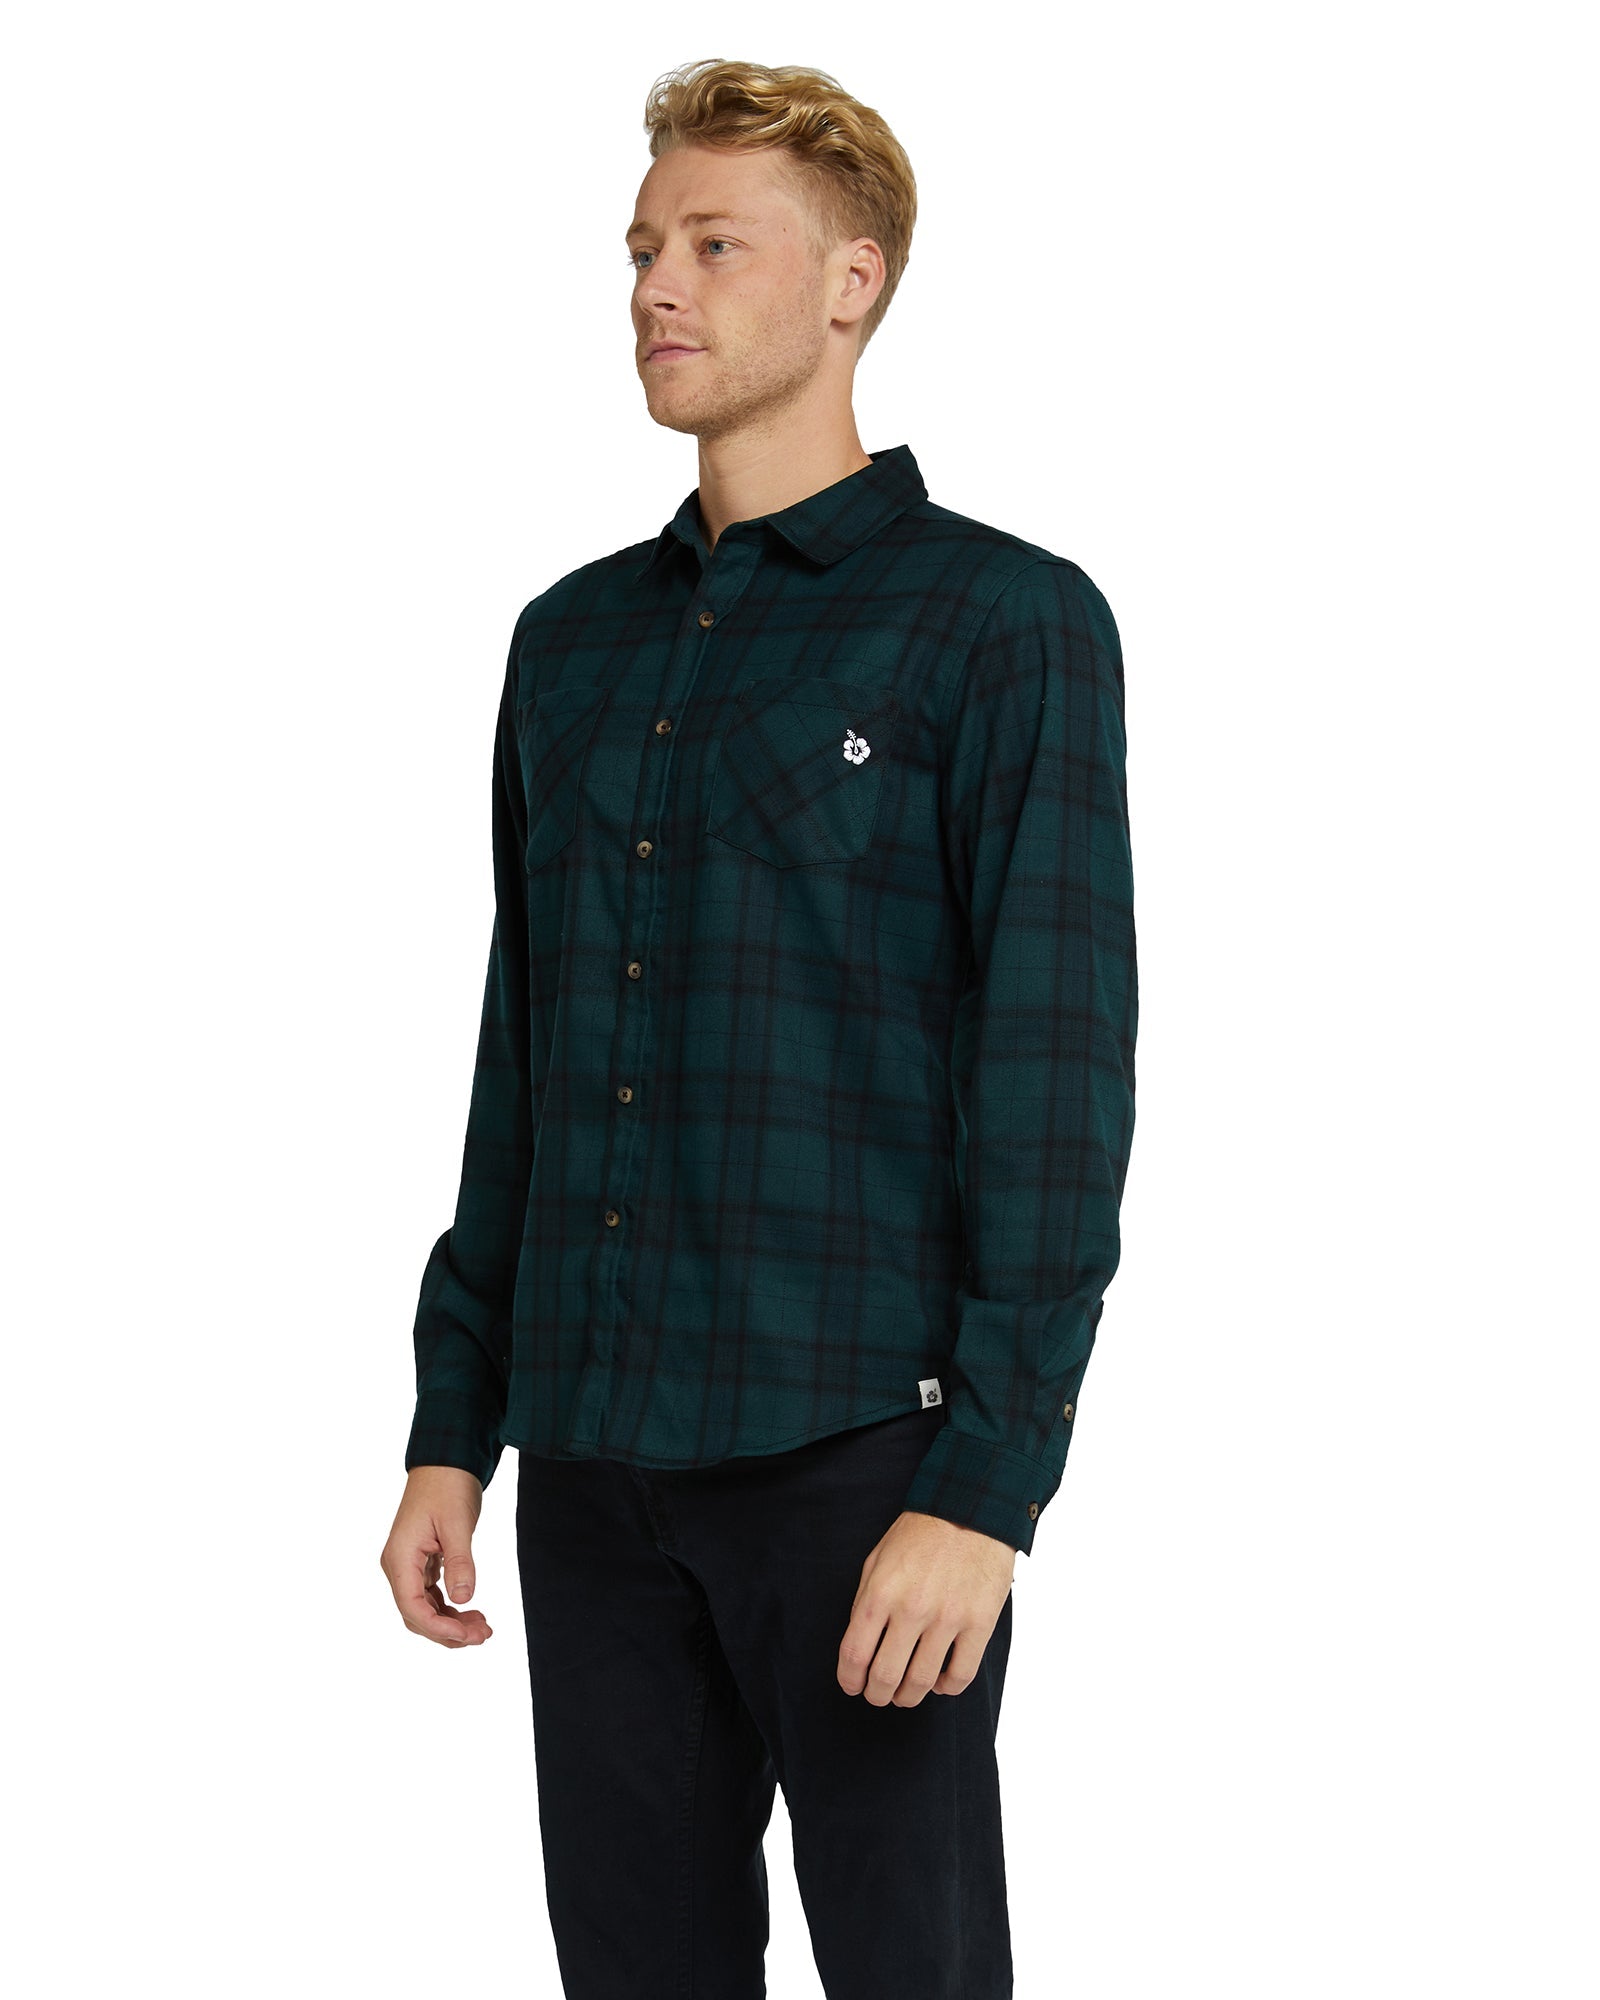 Mens - Flannel Long Sleeve Shirt - Hiker - Navy/Green